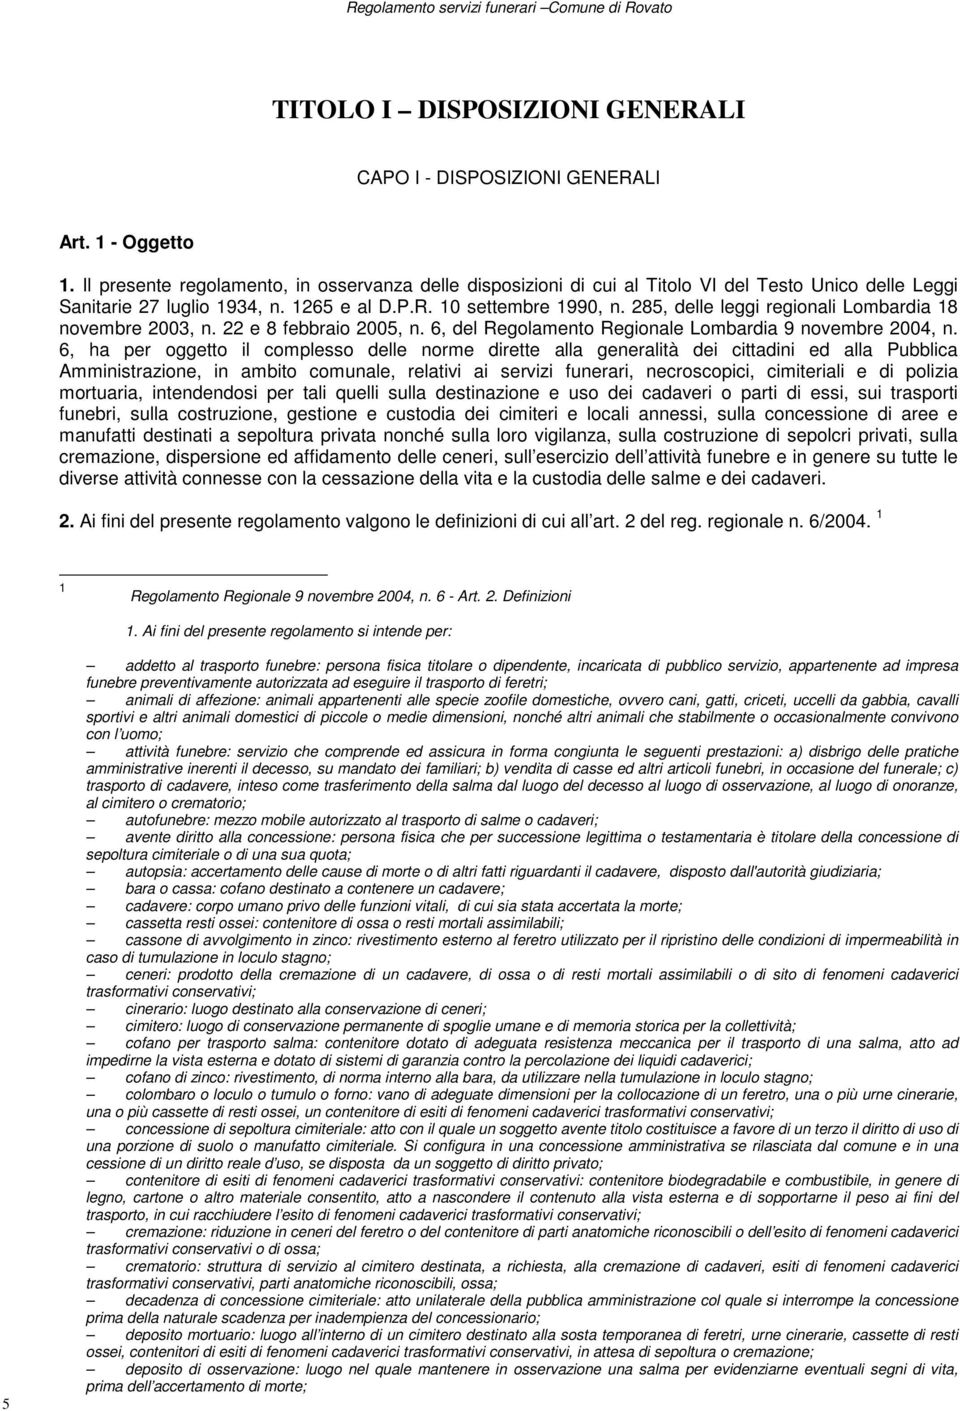 285, delle leggi regionali Lombardia 18 novembre 2003, n. 22 e 8 febbraio 2005, n. 6, del Regolamento Regionale Lombardia 9 novembre 2004, n.